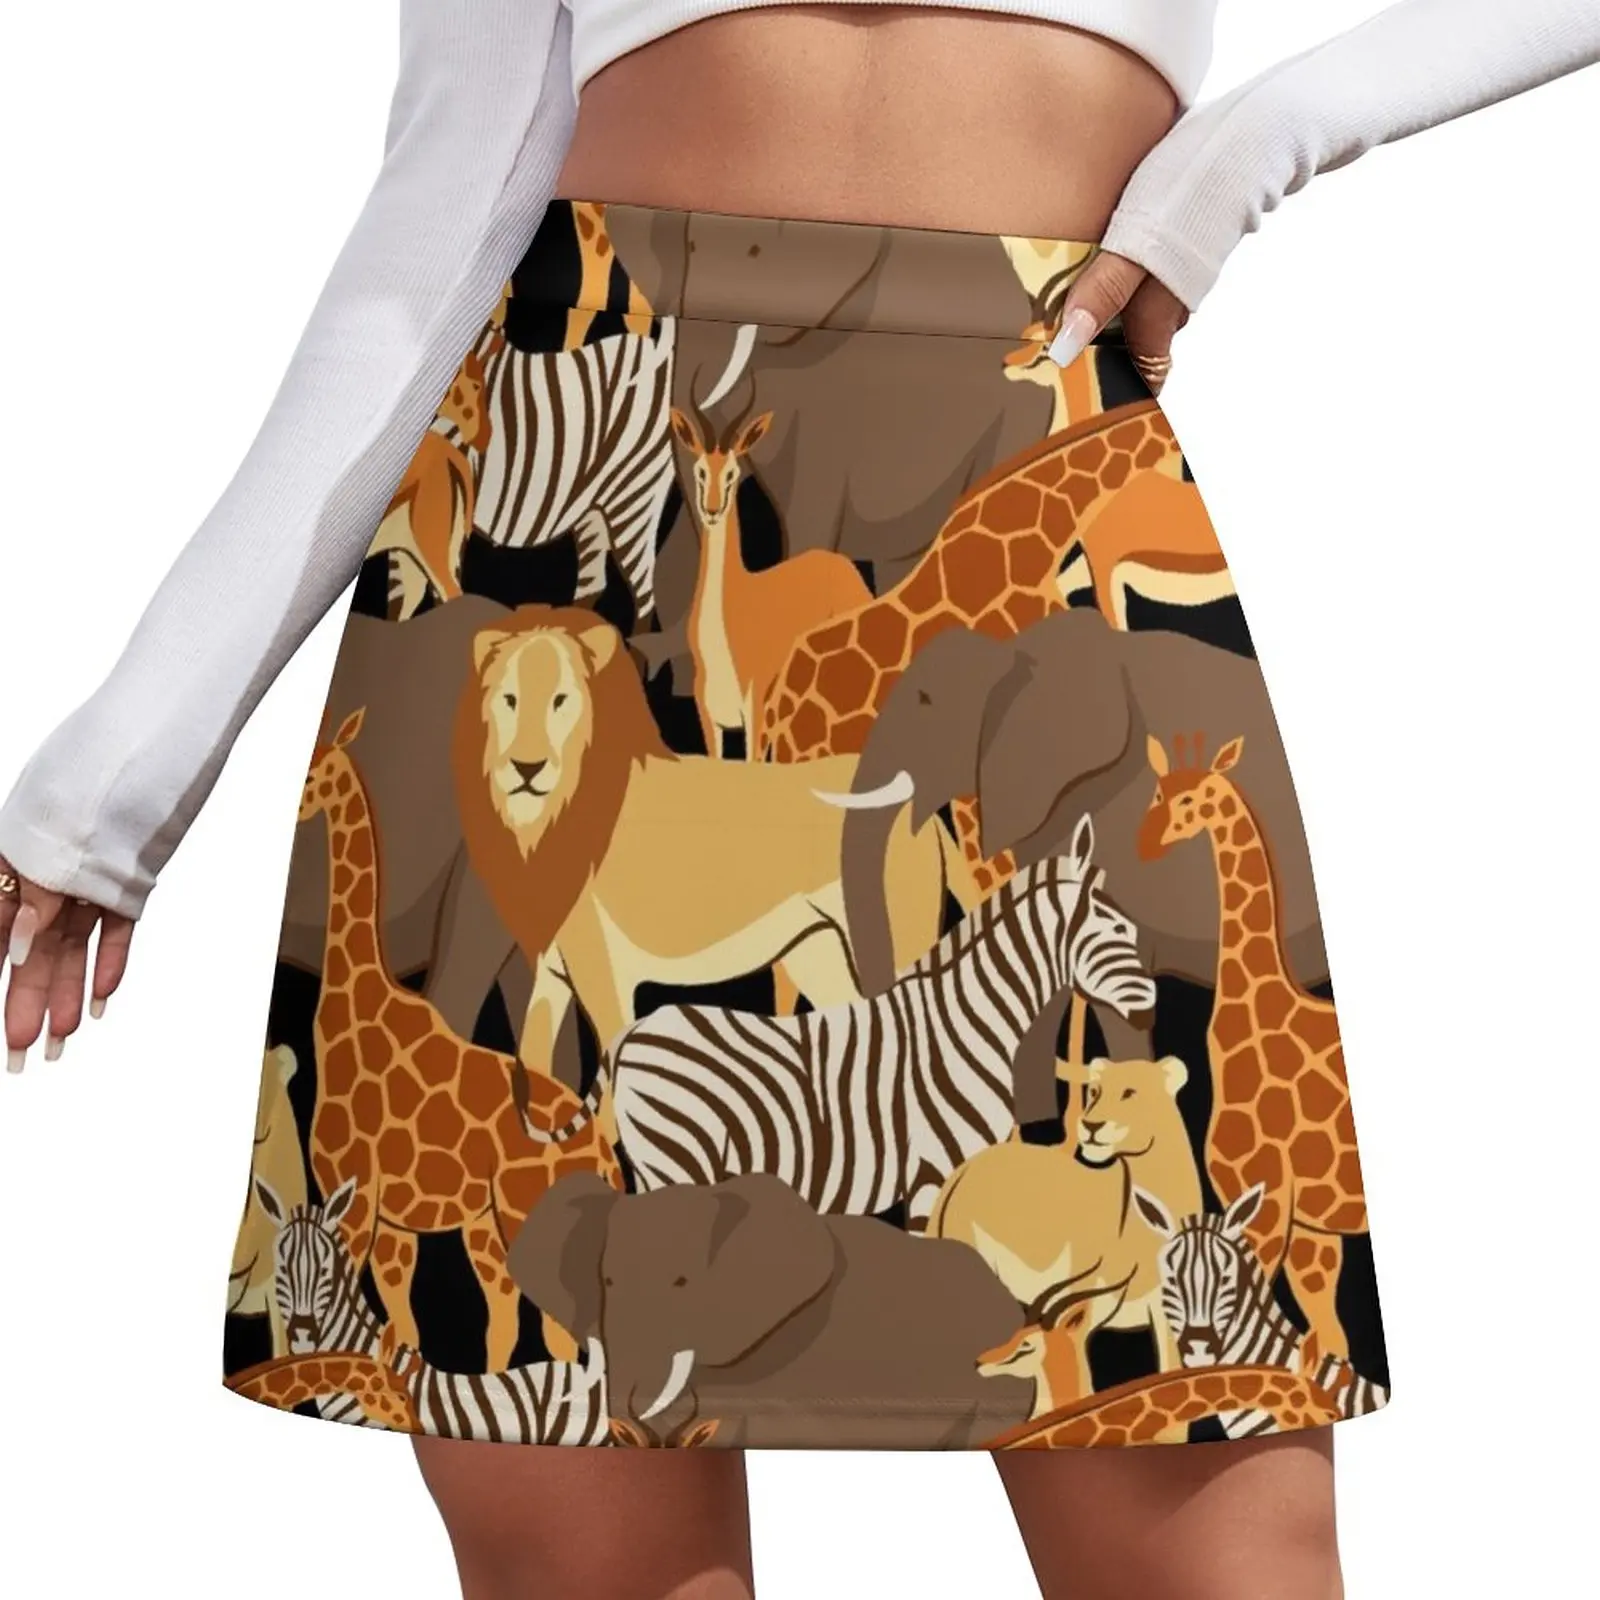 Safari, Giraffe, zebra, elephant, animal print Mini Skirt Female dress skirts for woman Skirt pants